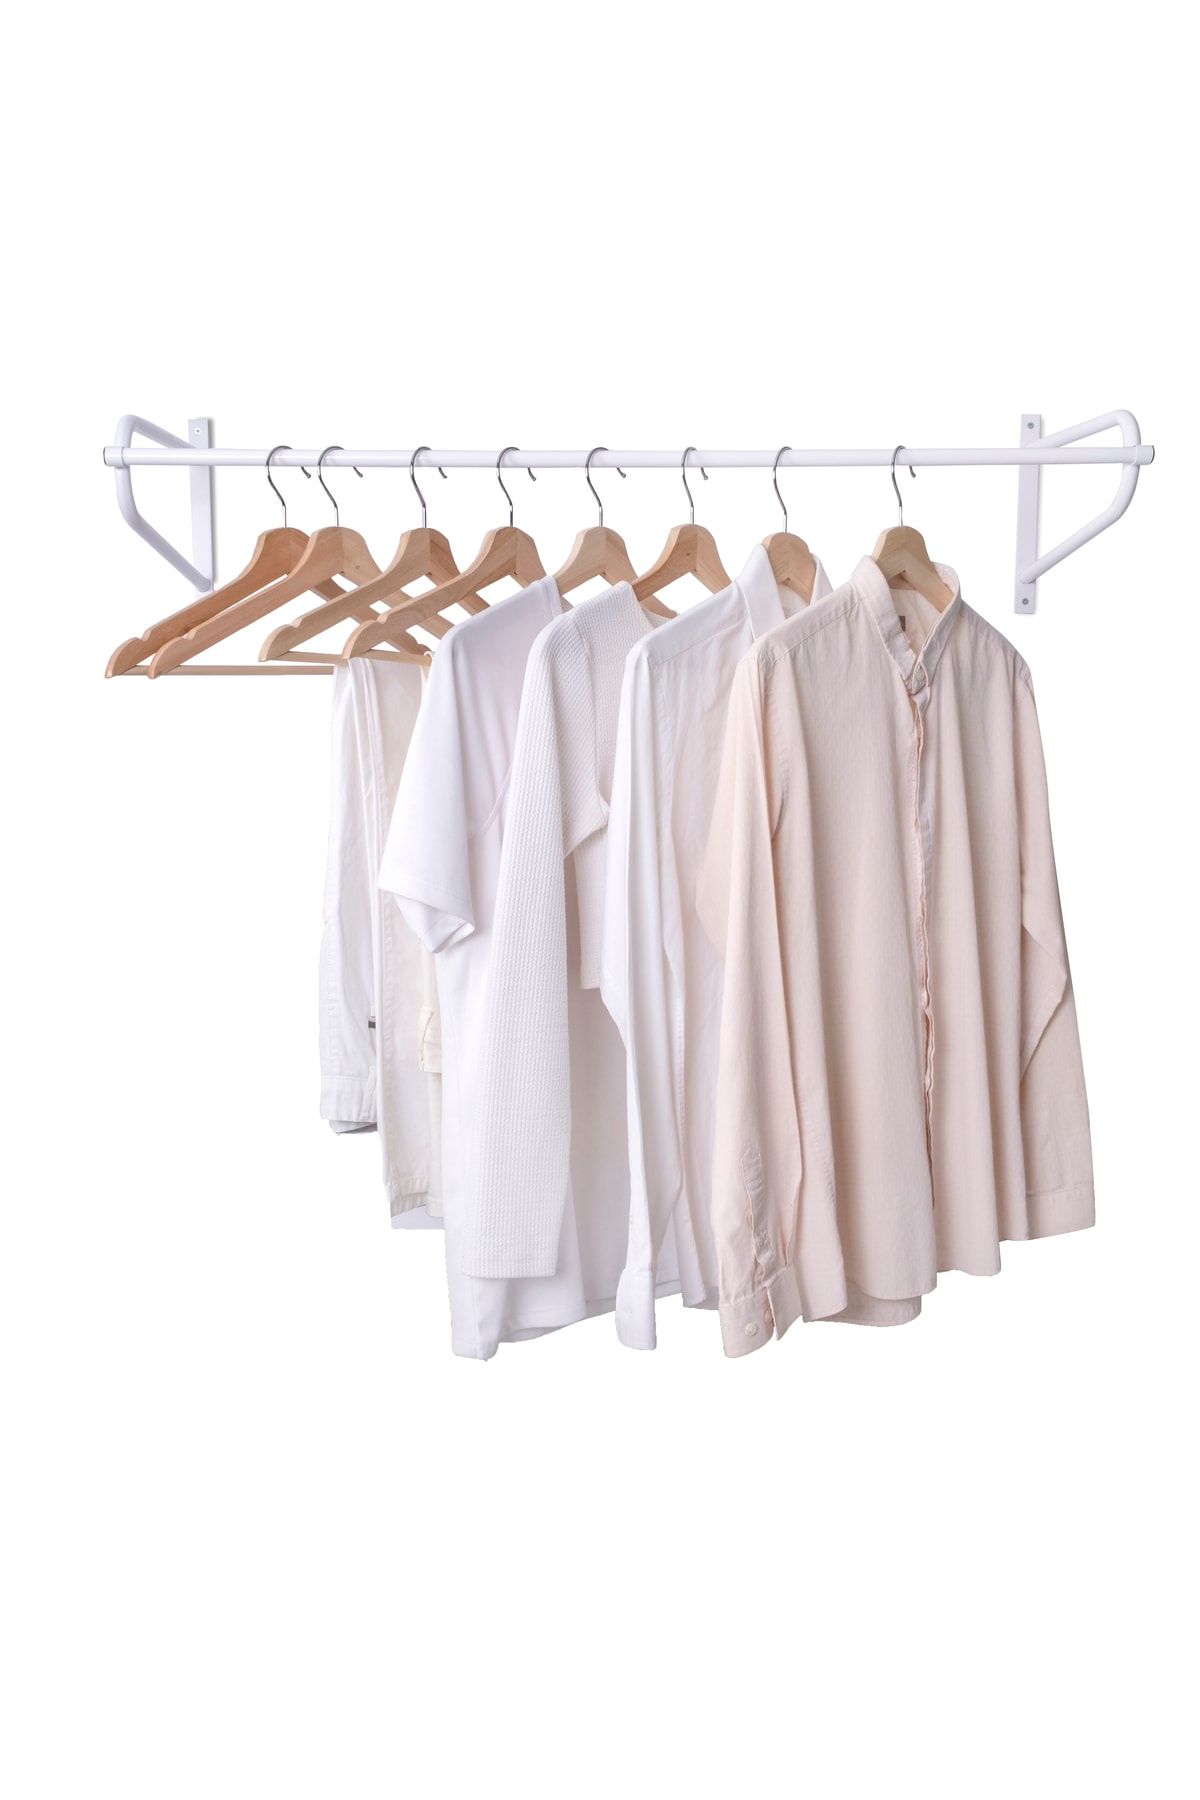 VegaDekor Beyaz Metal Duvara Monte Askılık Elbise Askılığı Konfeksiyon Askılığı Duvar Askısı Kıyafet Askılığı